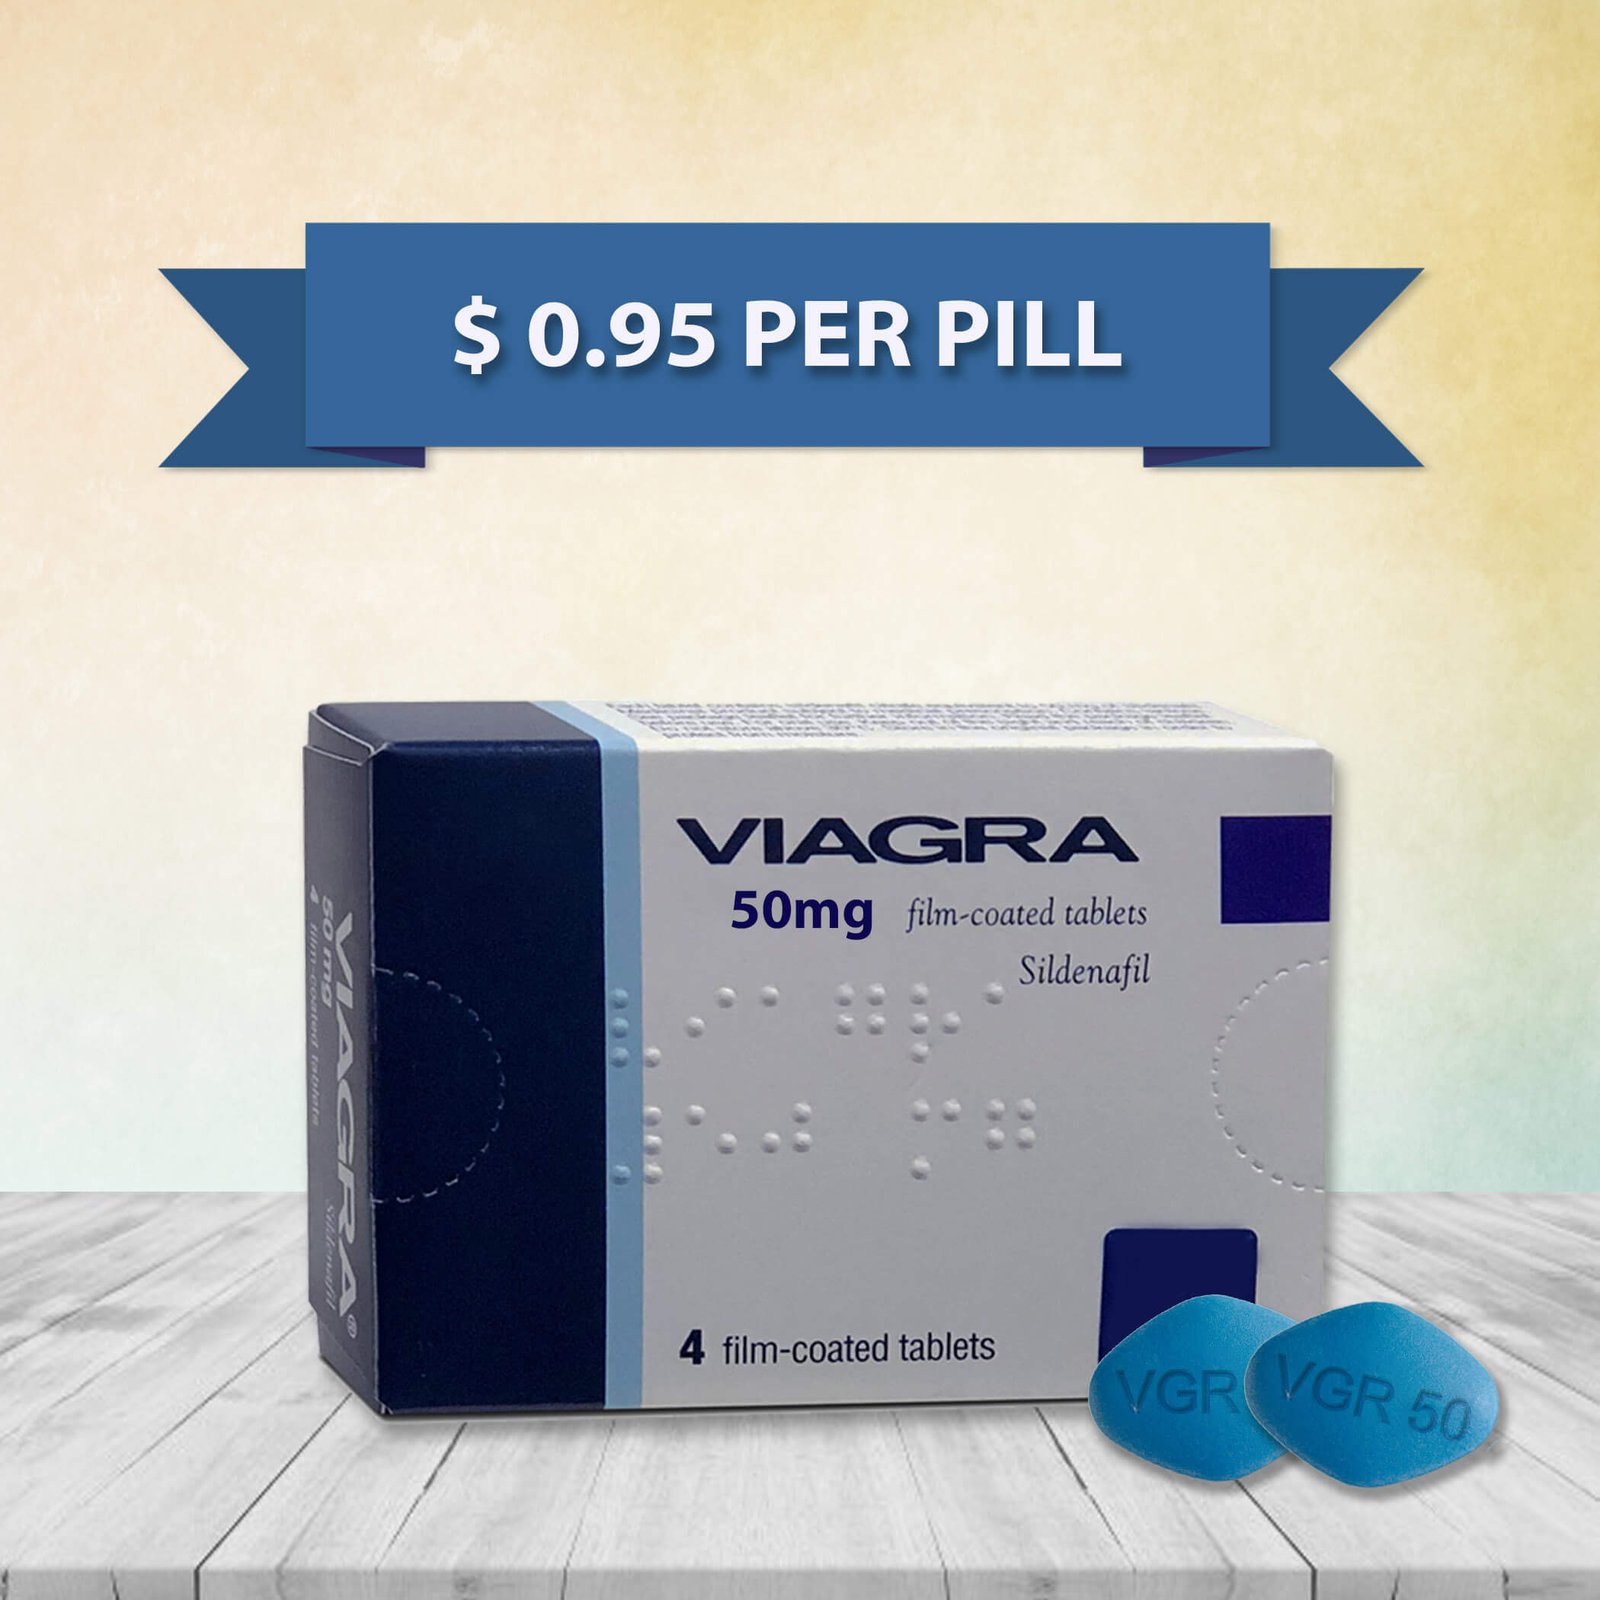 50mg viagra pill price